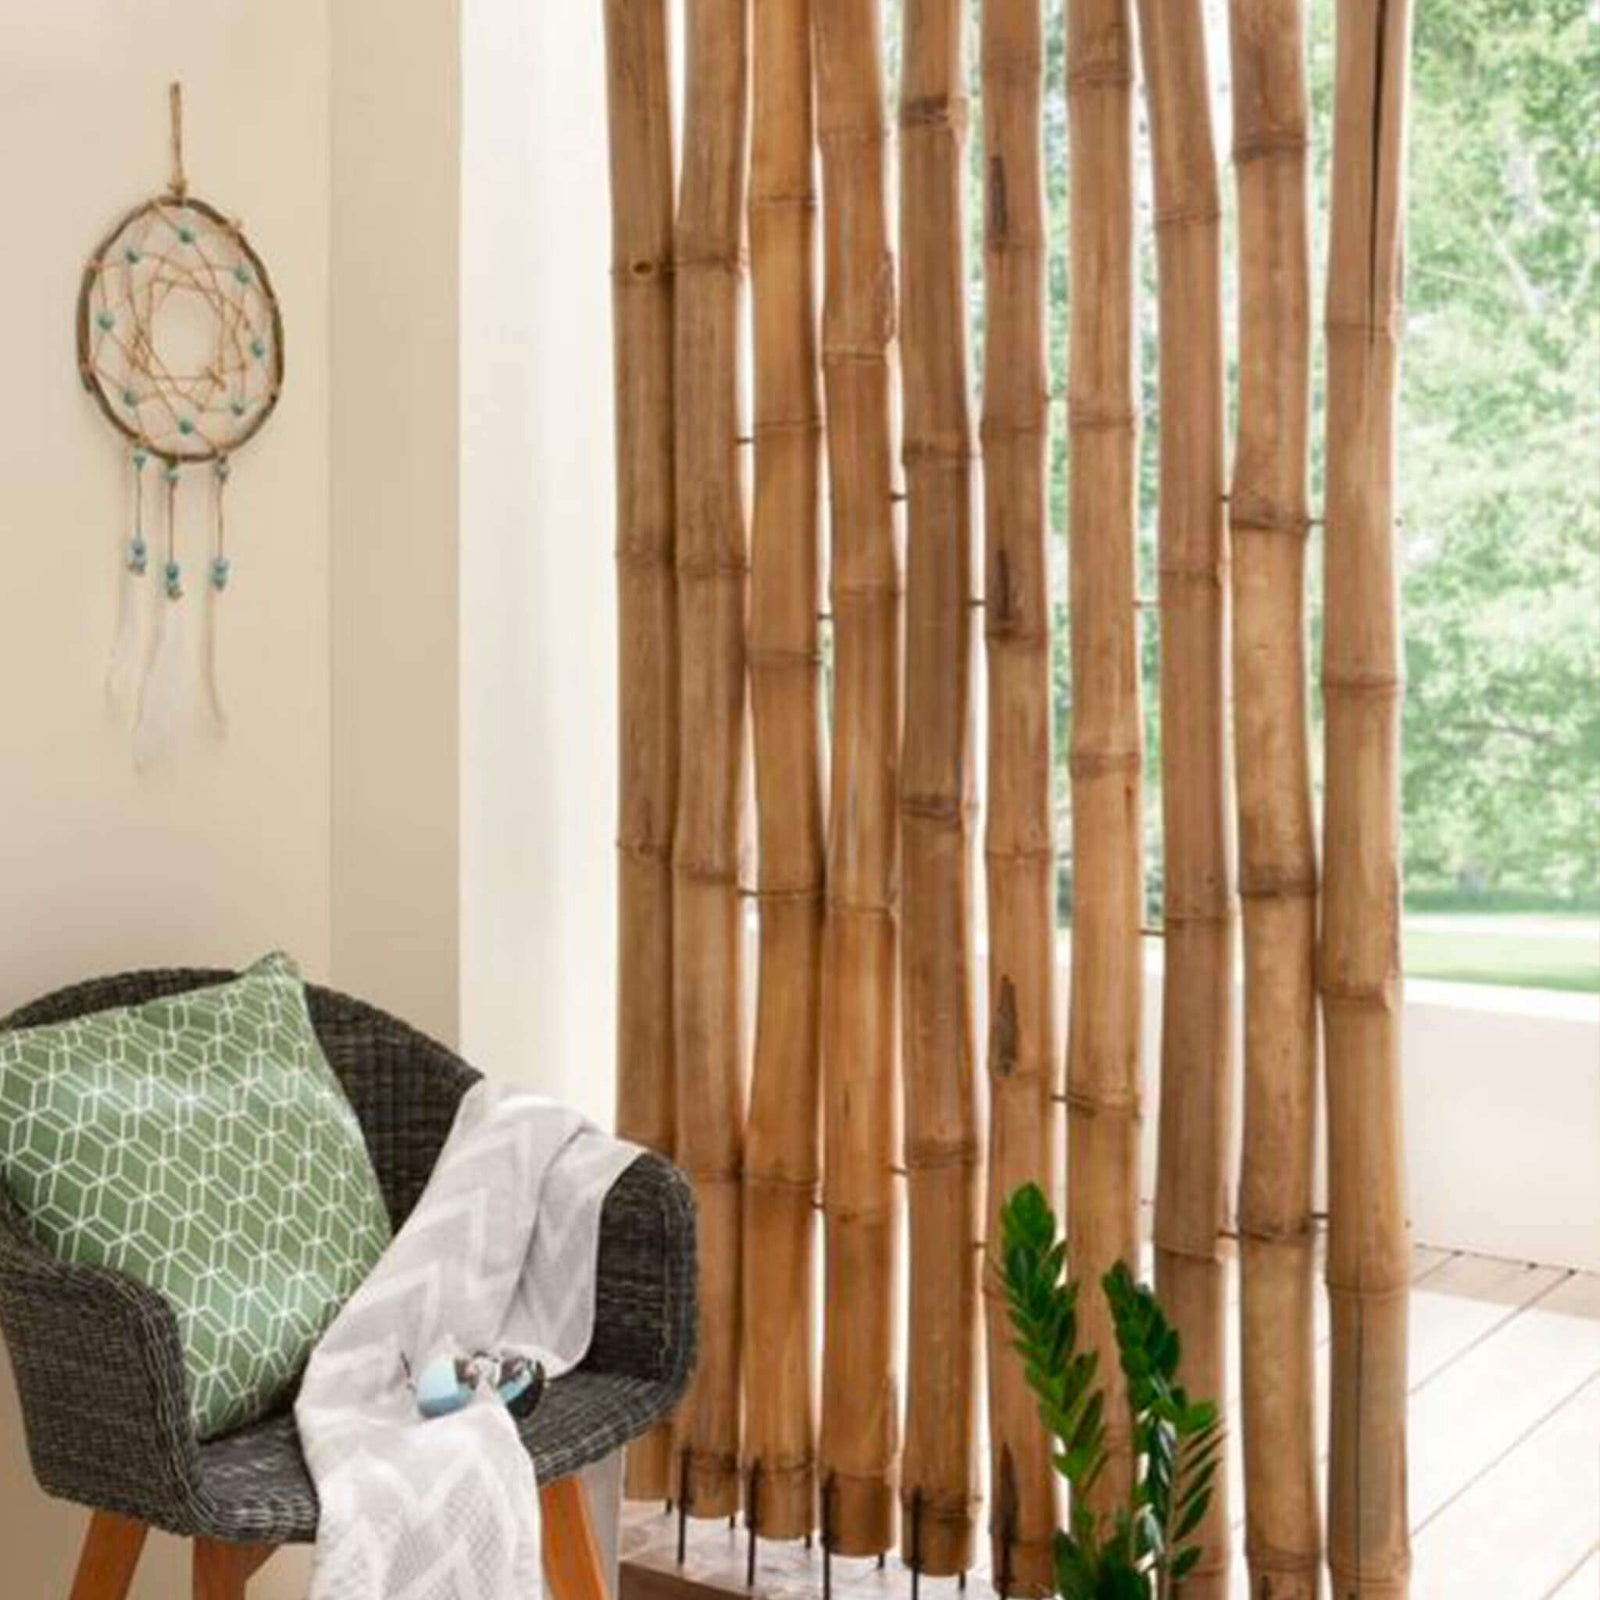 Inspiration d'un mur d'intimité de bambou de couleur naturelle - Boutique Palmex